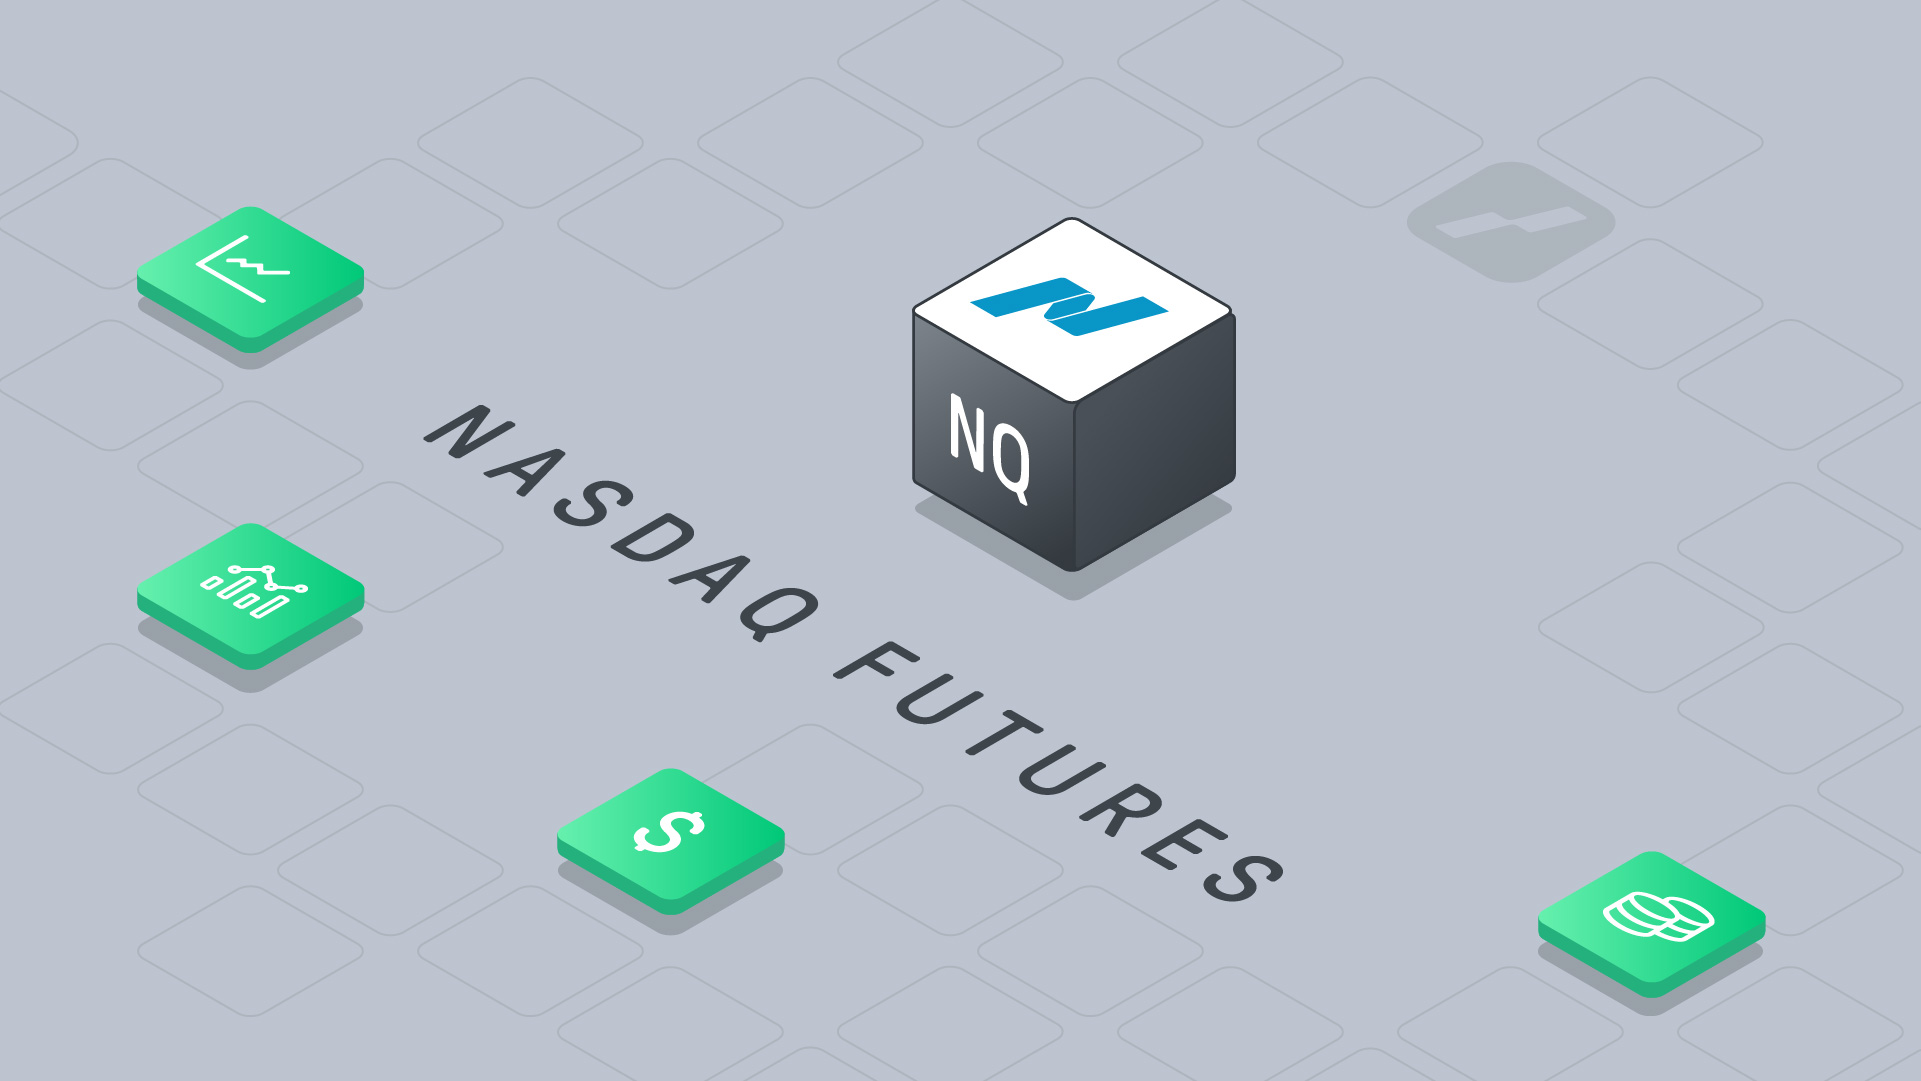 nasdaq futures uitleg - nasdaq futures live - micro nasdaq futures - NQ future